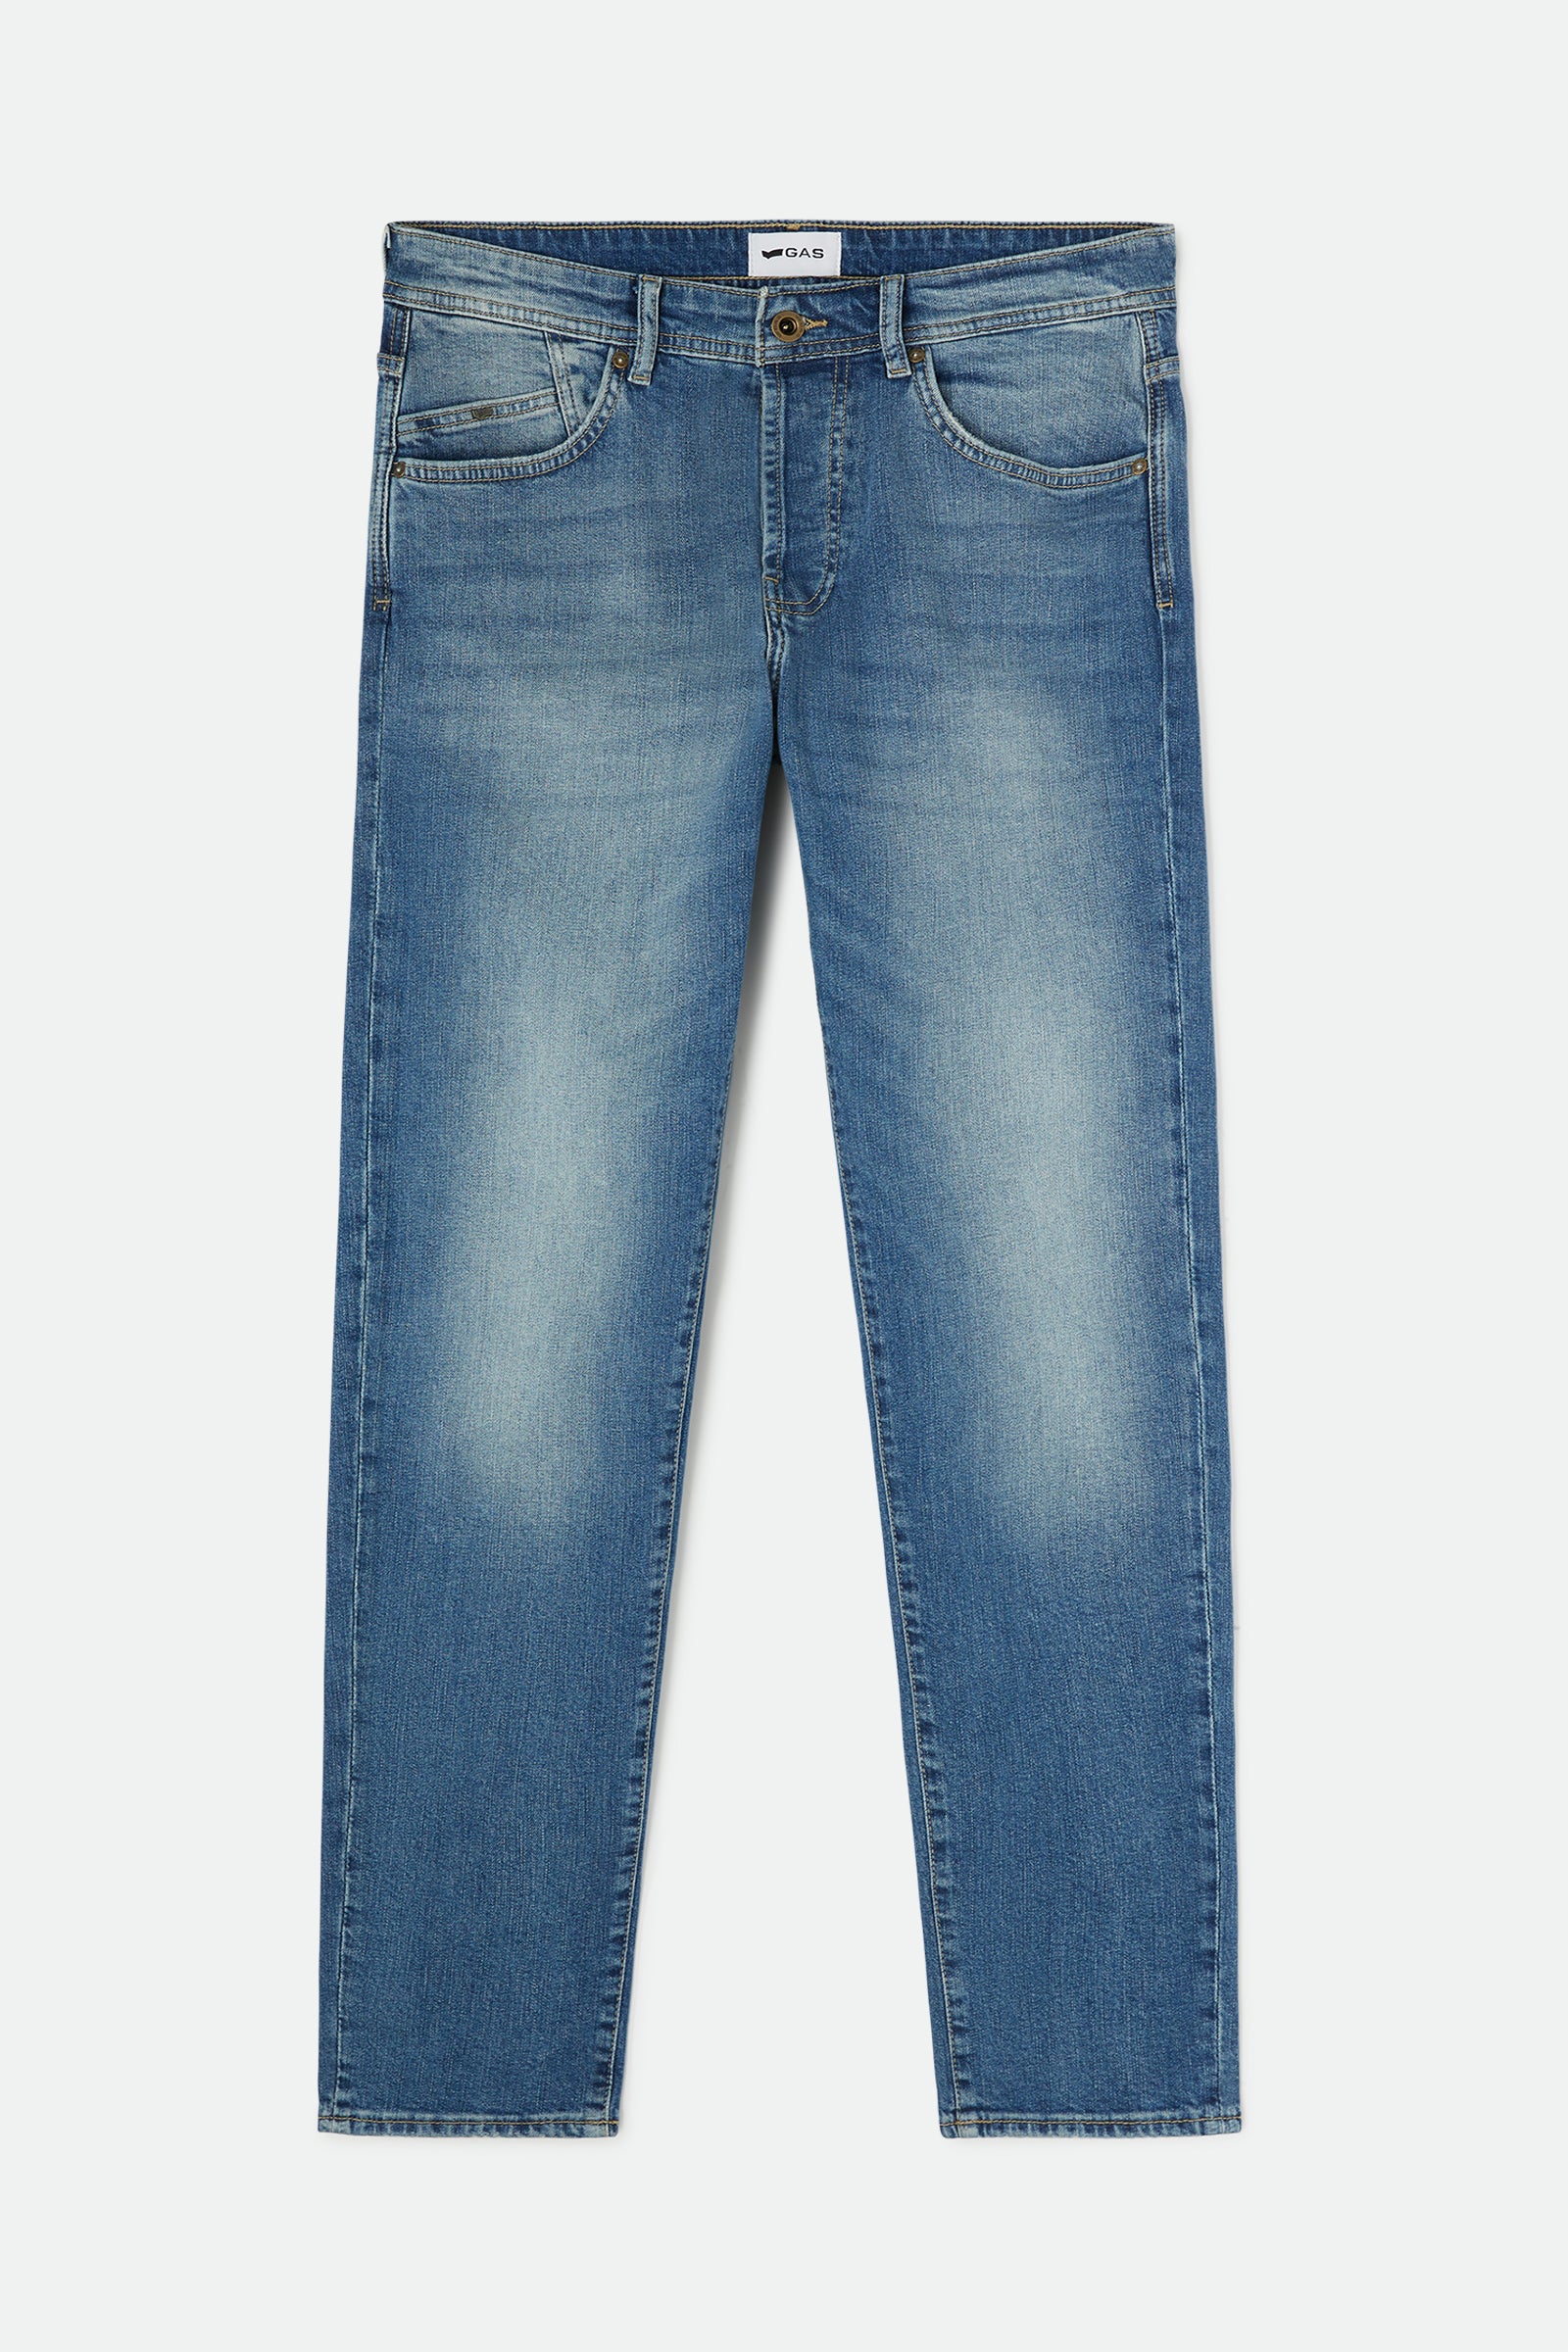 メンズキャロットジーンズ - Gas Jeans – GAS Jeans